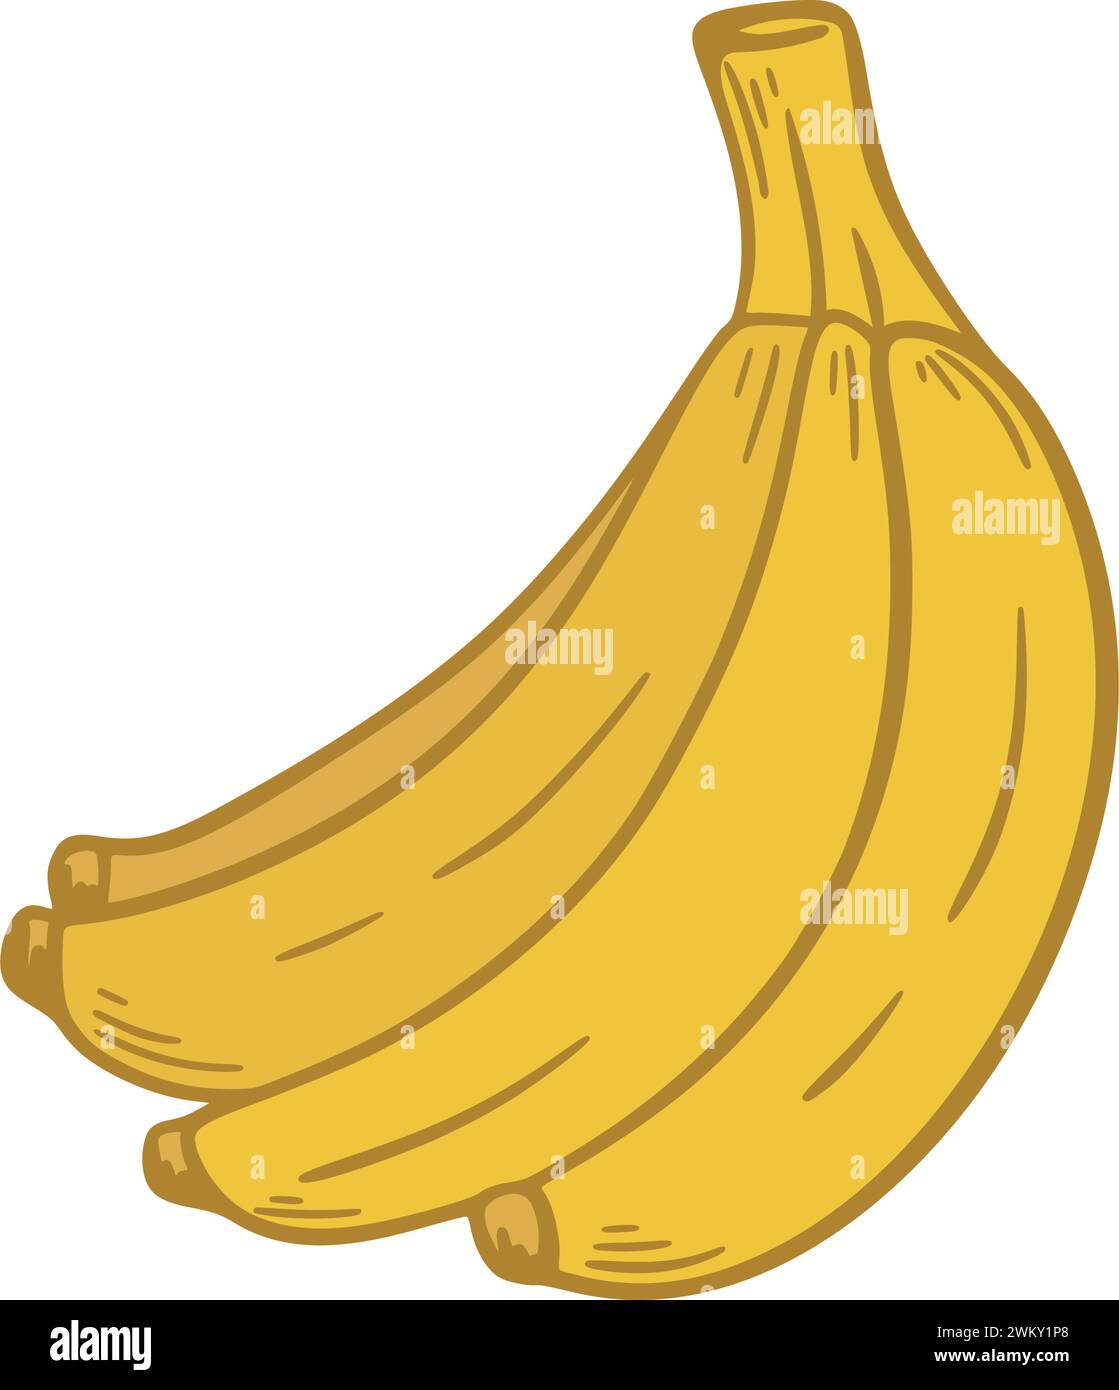 Ein Haufen reifer gelber Bananen handgezeichneter Clip Art. Tropische Früchte isoliert auf weißem Hintergrund. Gesunde Bio-Lebensmittel, Vektorgrafiken Stock Vektor